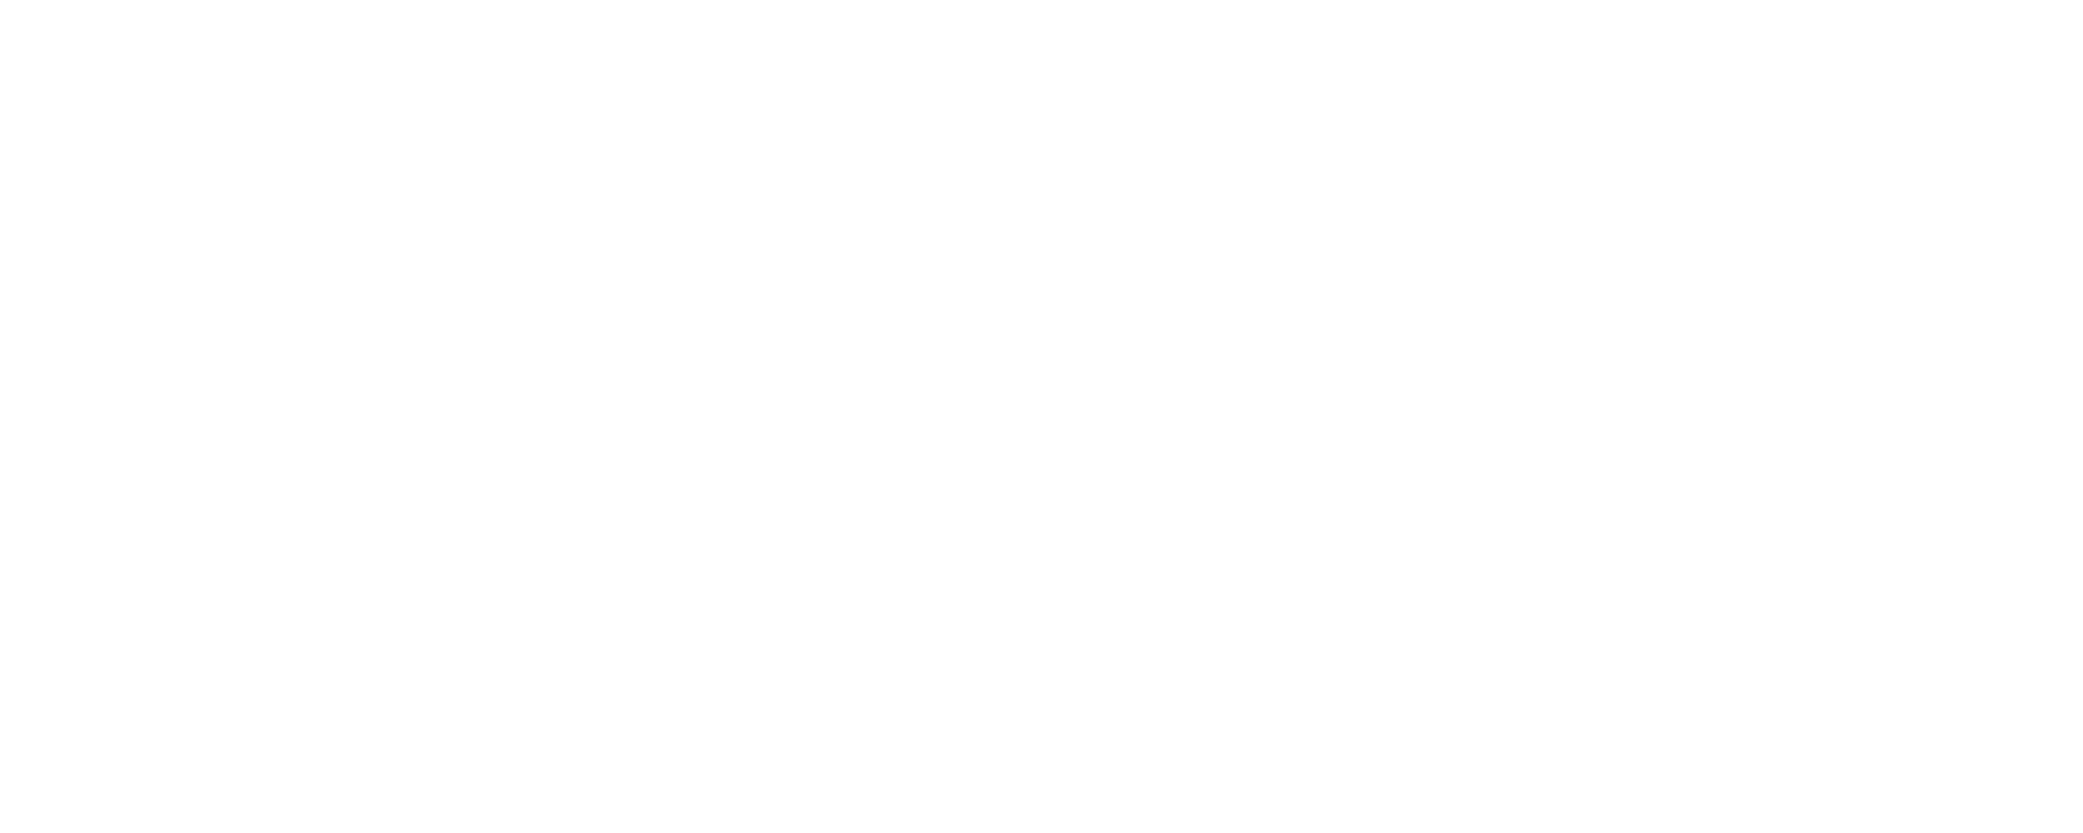 Liesle McConichie Math With Brain in Mind